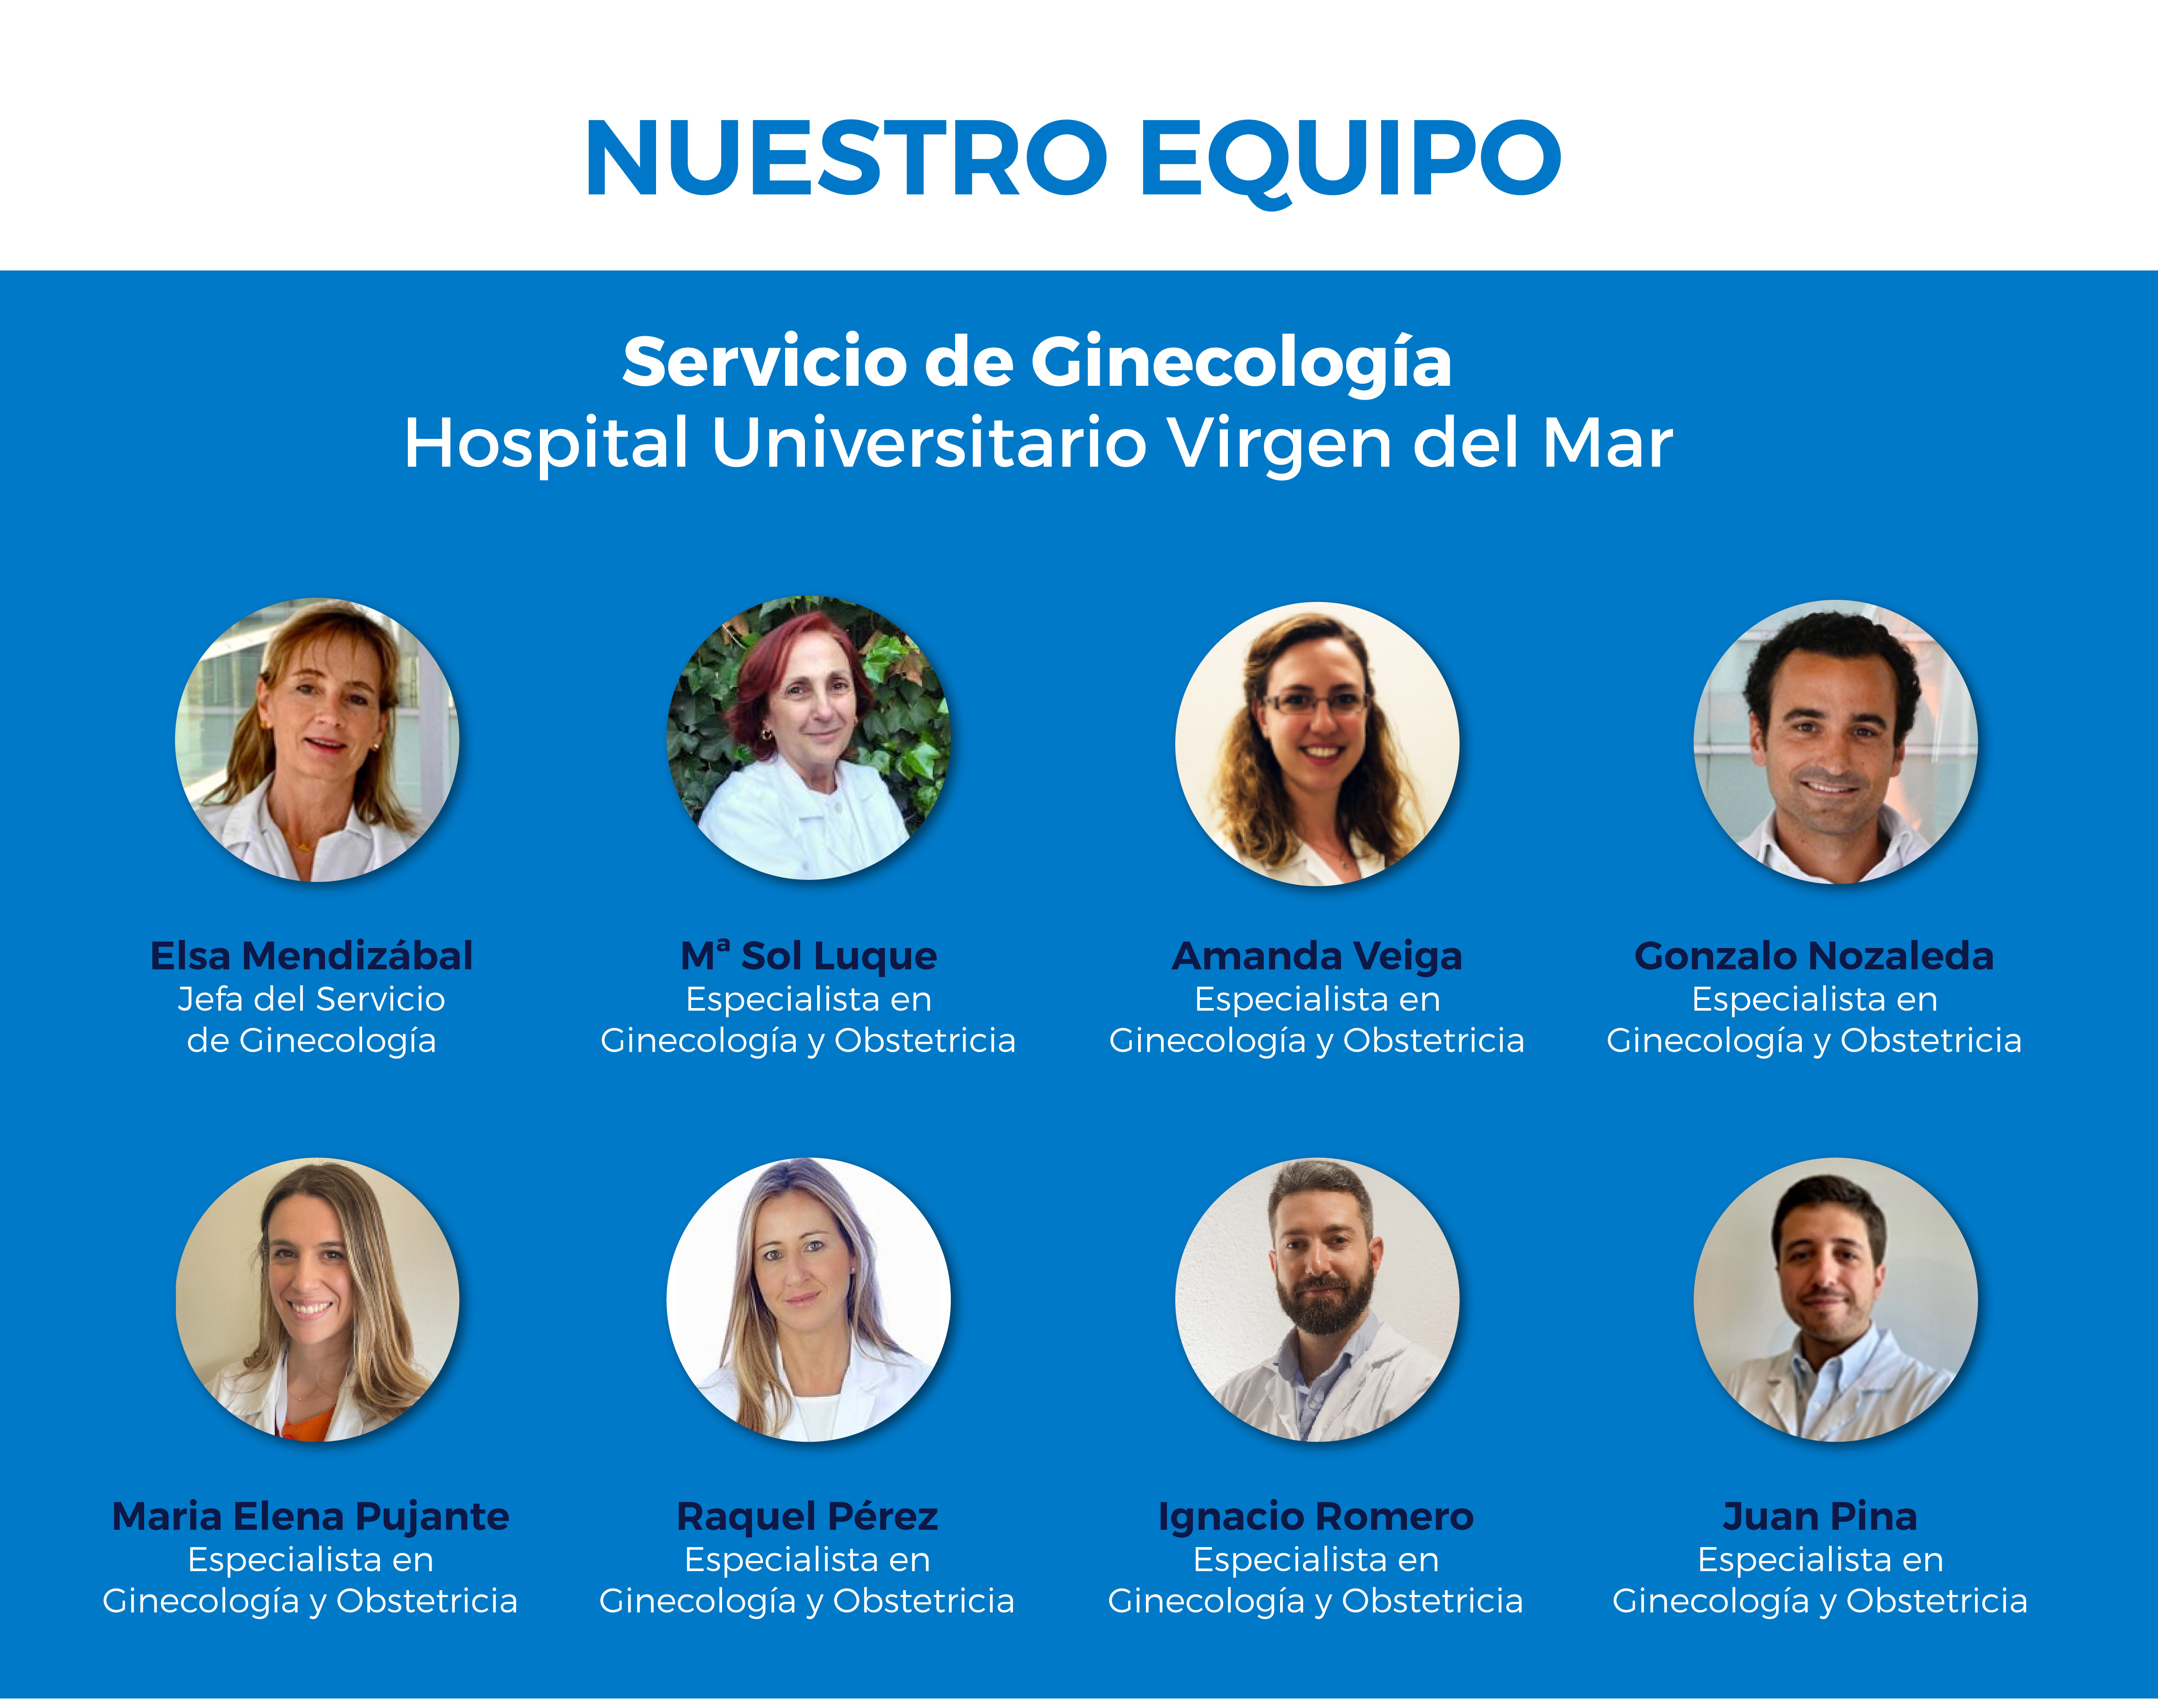 Equipo de Ginecología Hospital Virgen del Mar